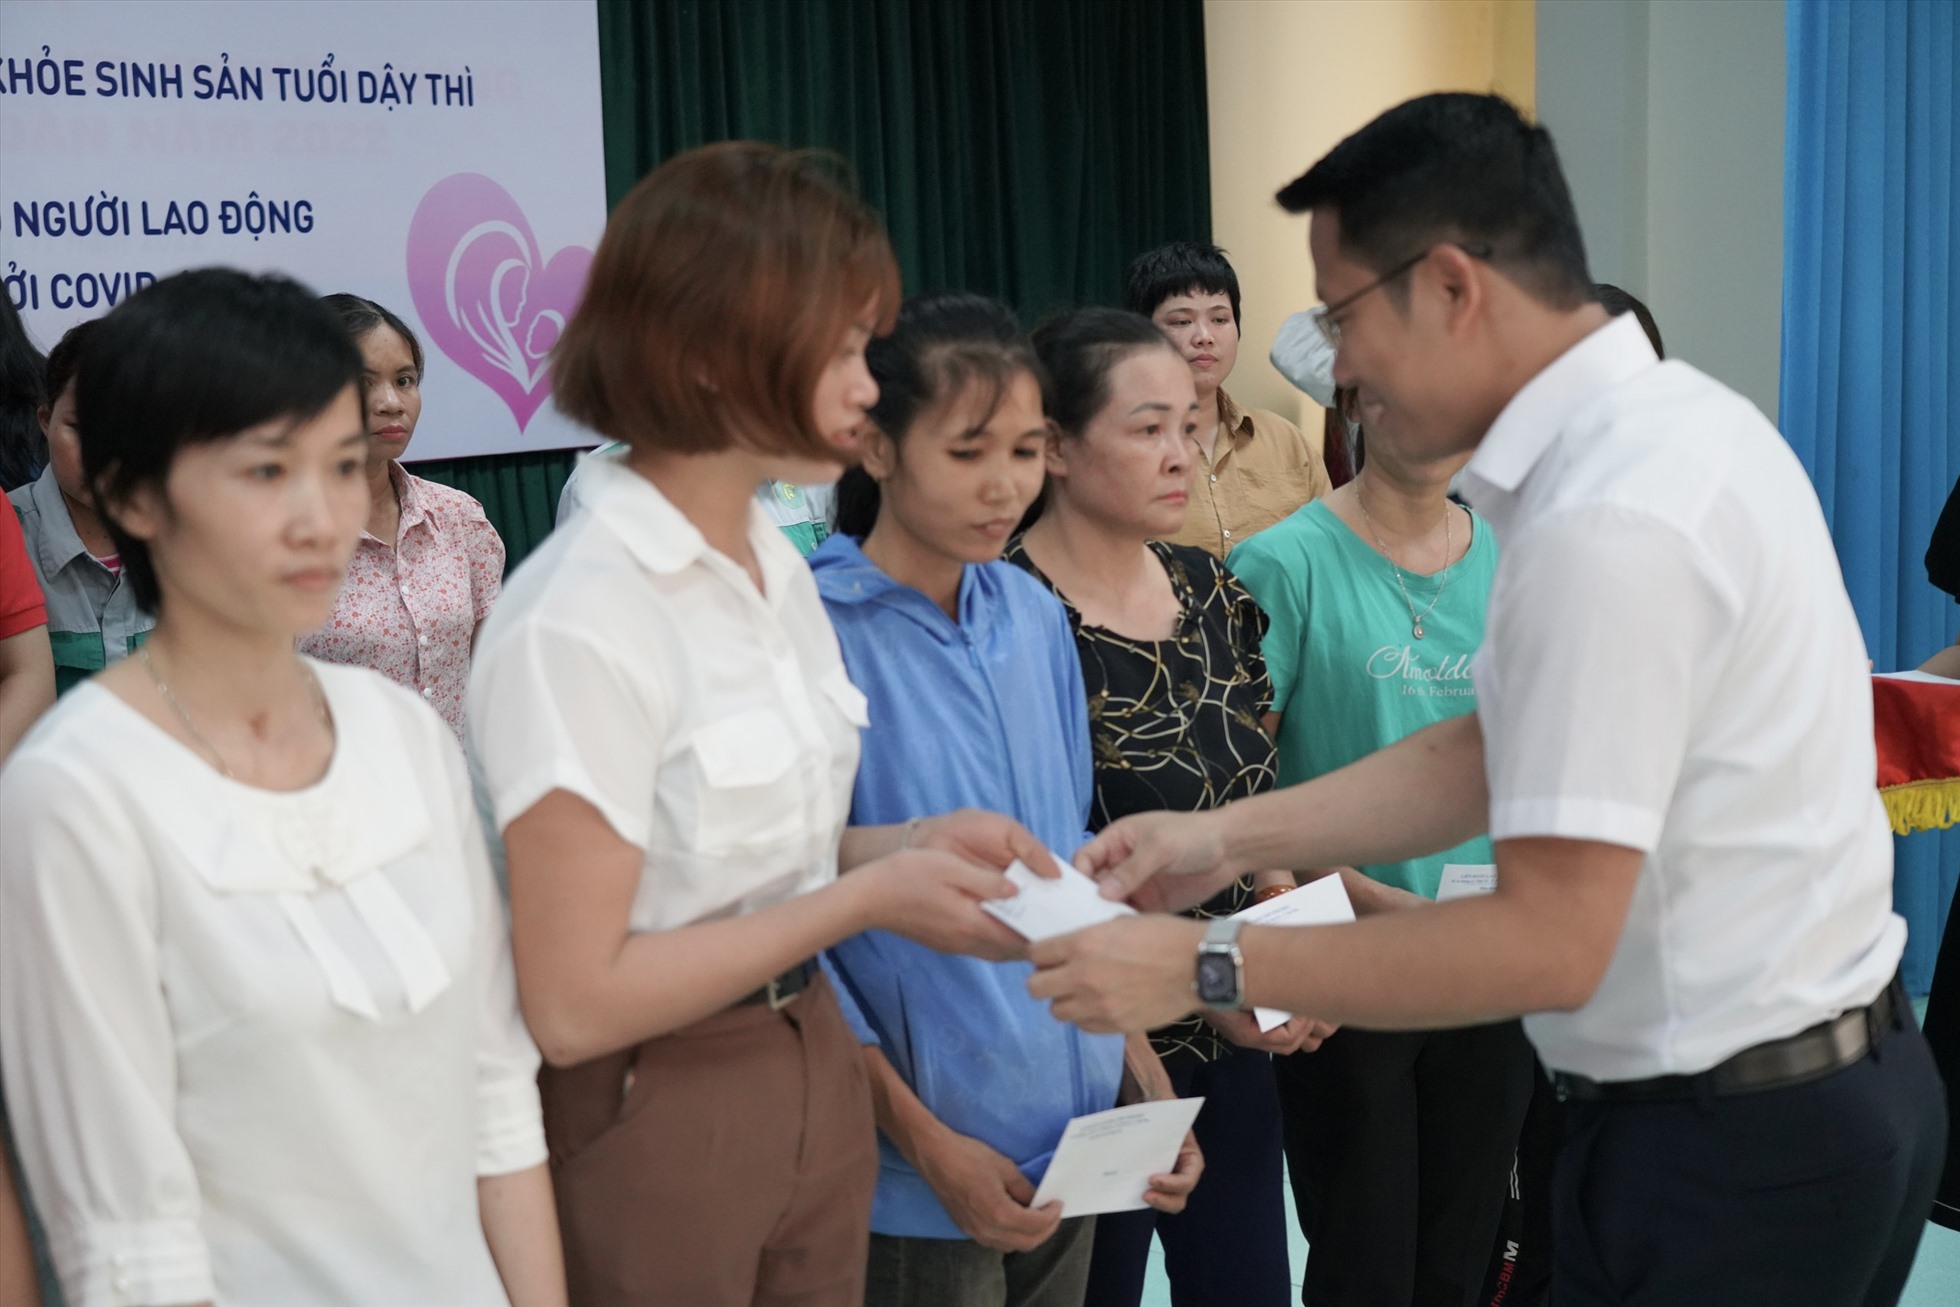 Phó Chủ tịch Liên đoàn Lao động tỉnh Khổng Sơn Thành trao quà cho công nhân lao động nữ có hoàn cảnh khó khăn tại chương trình. Ảnh: Lâm Nguyễn